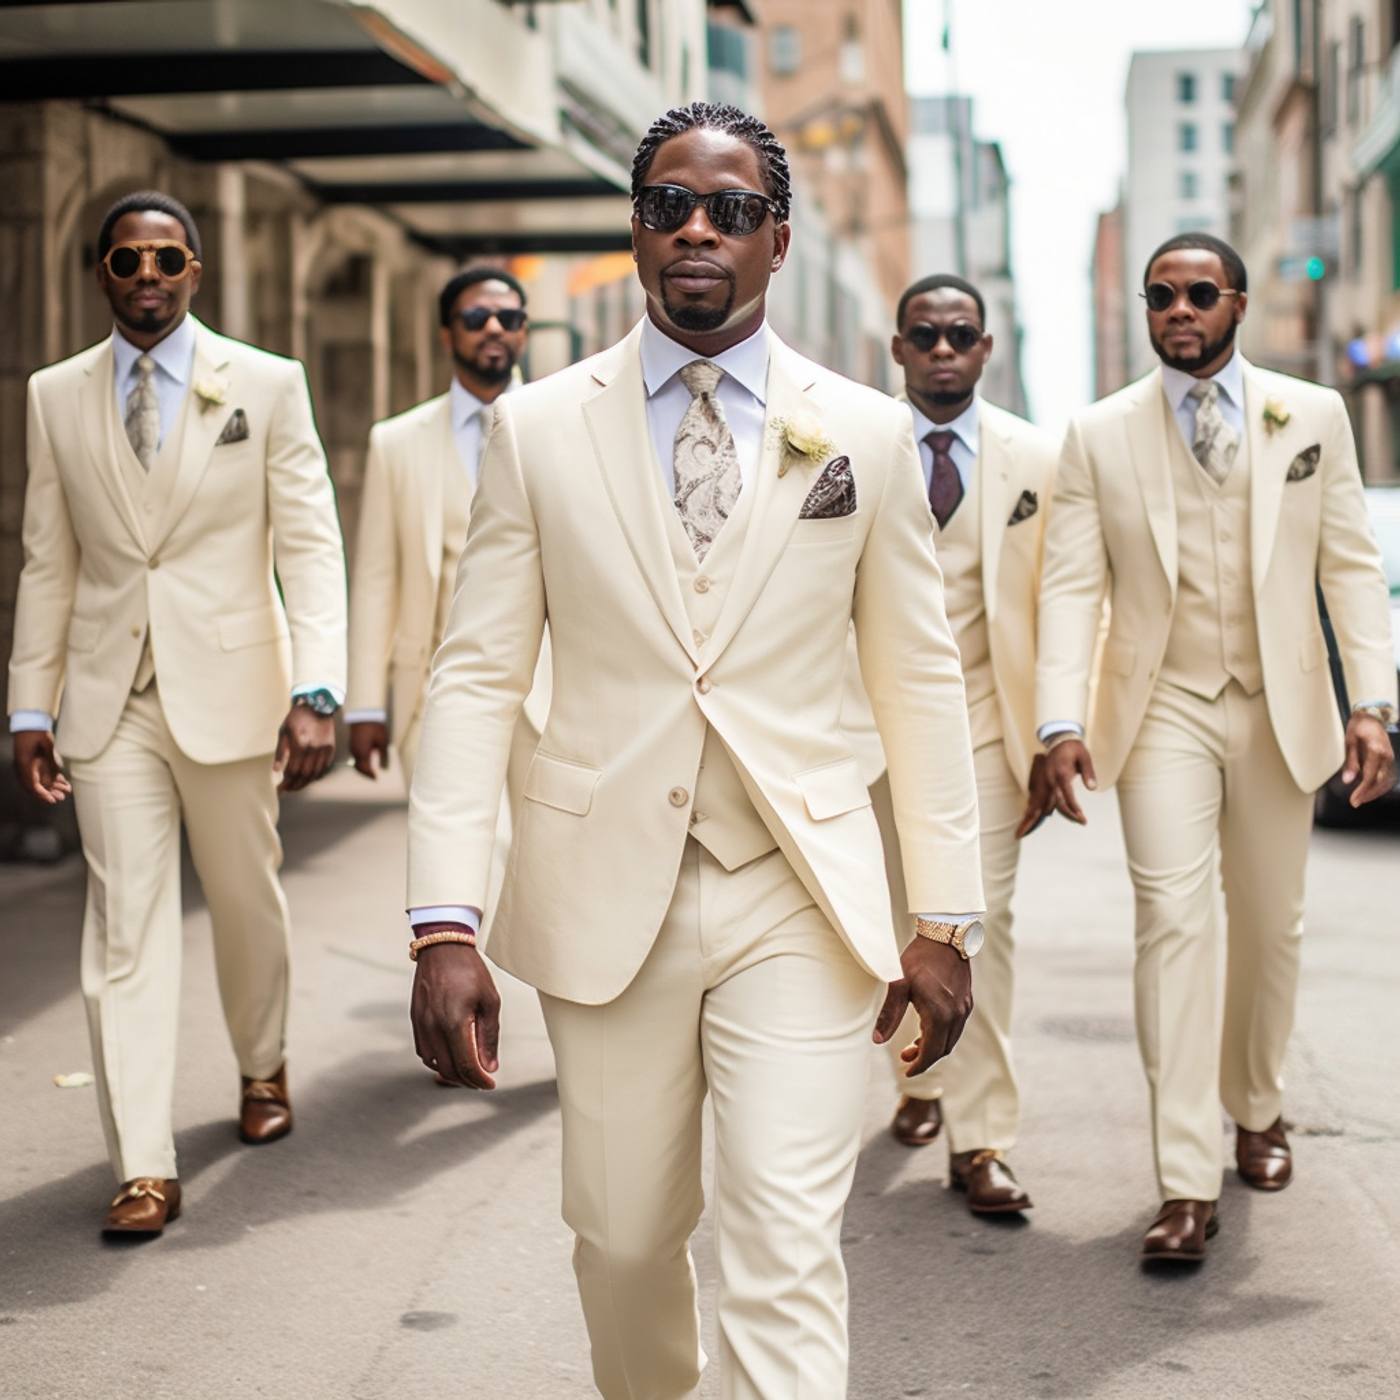 GROOM WEDDING SUIT Men Suit Light Color Suit Elegant Men 